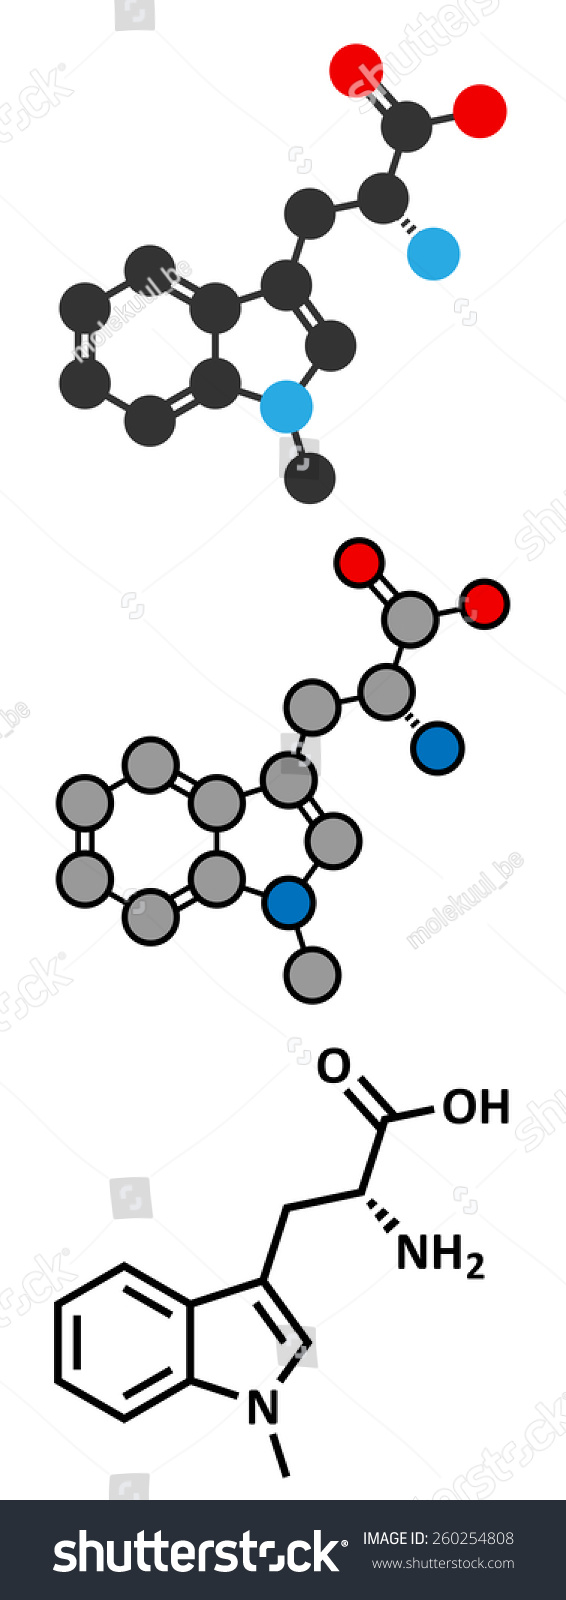 Indoximod抗癌药物分子(被罩或吲哚胺2,3-diox